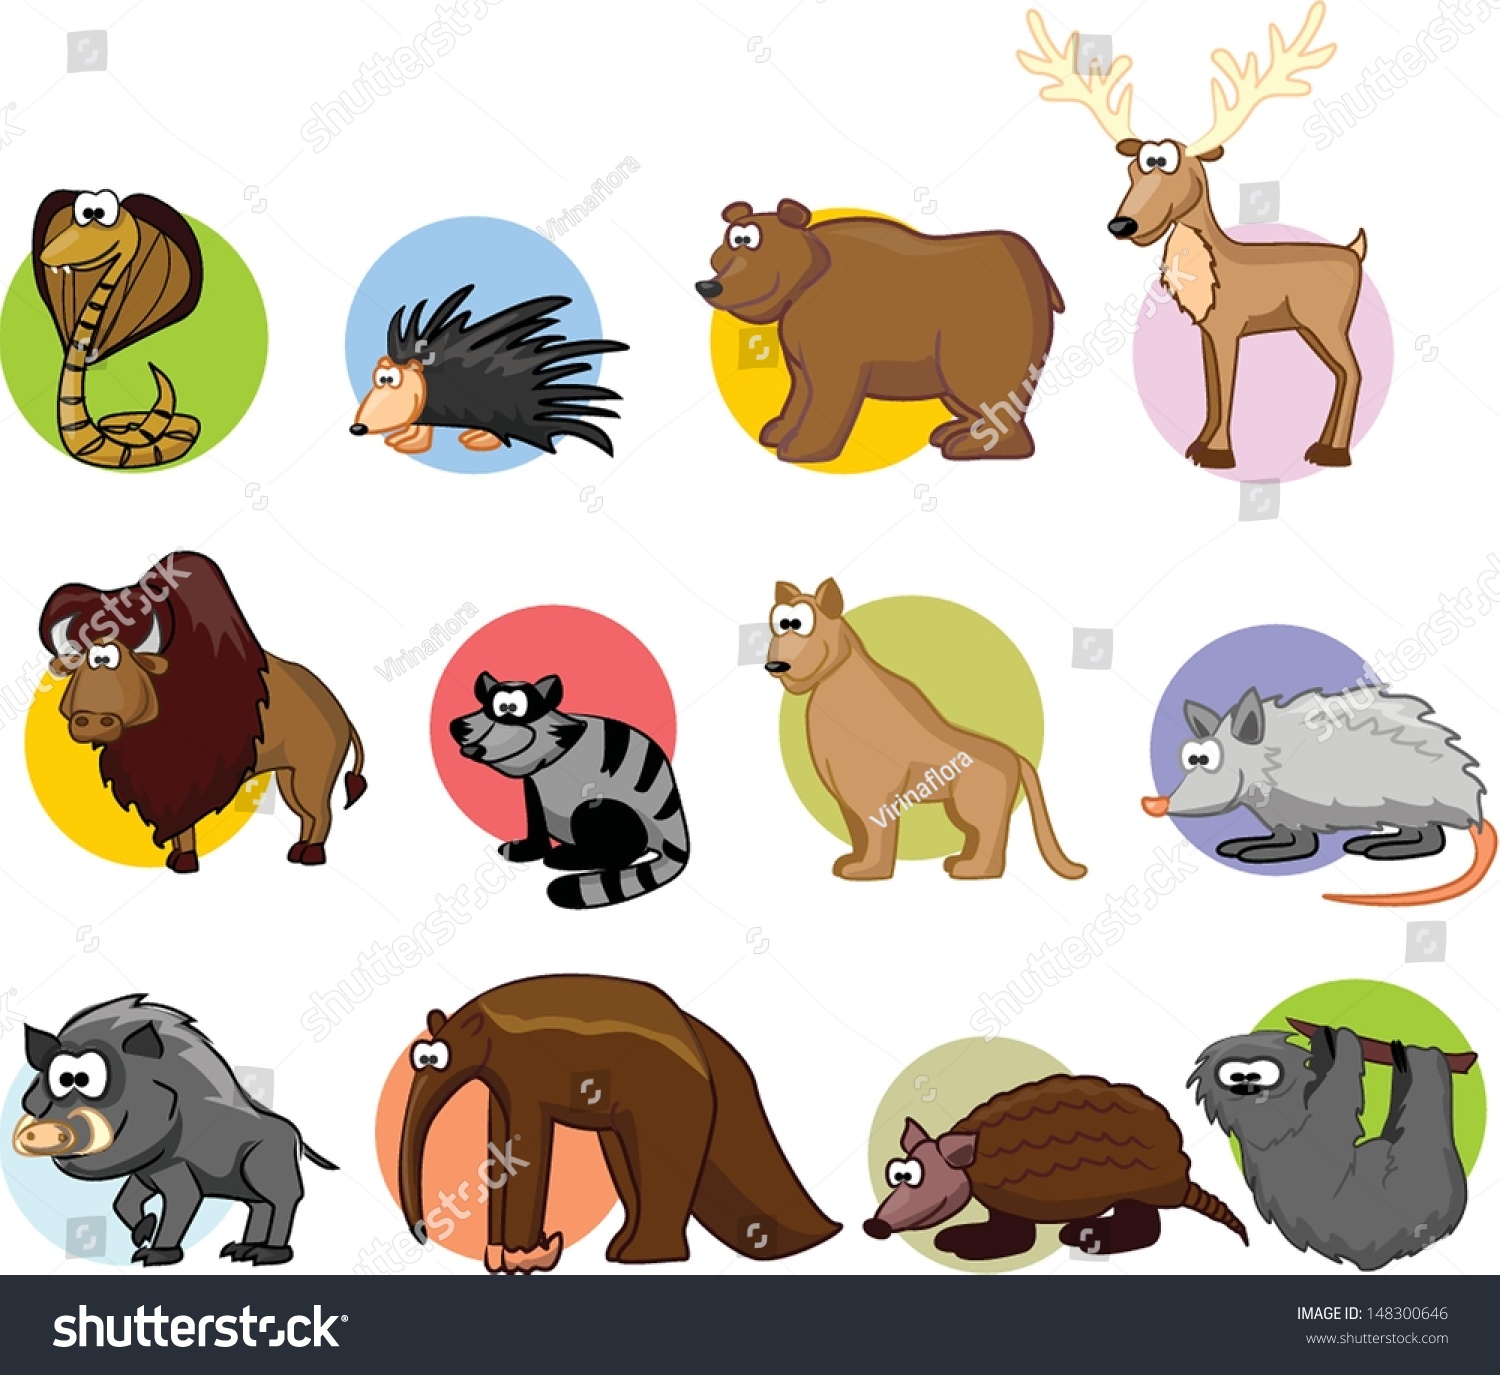 Set Cute Cartoon Animals Stock Vector 148300646 - Shutterstock